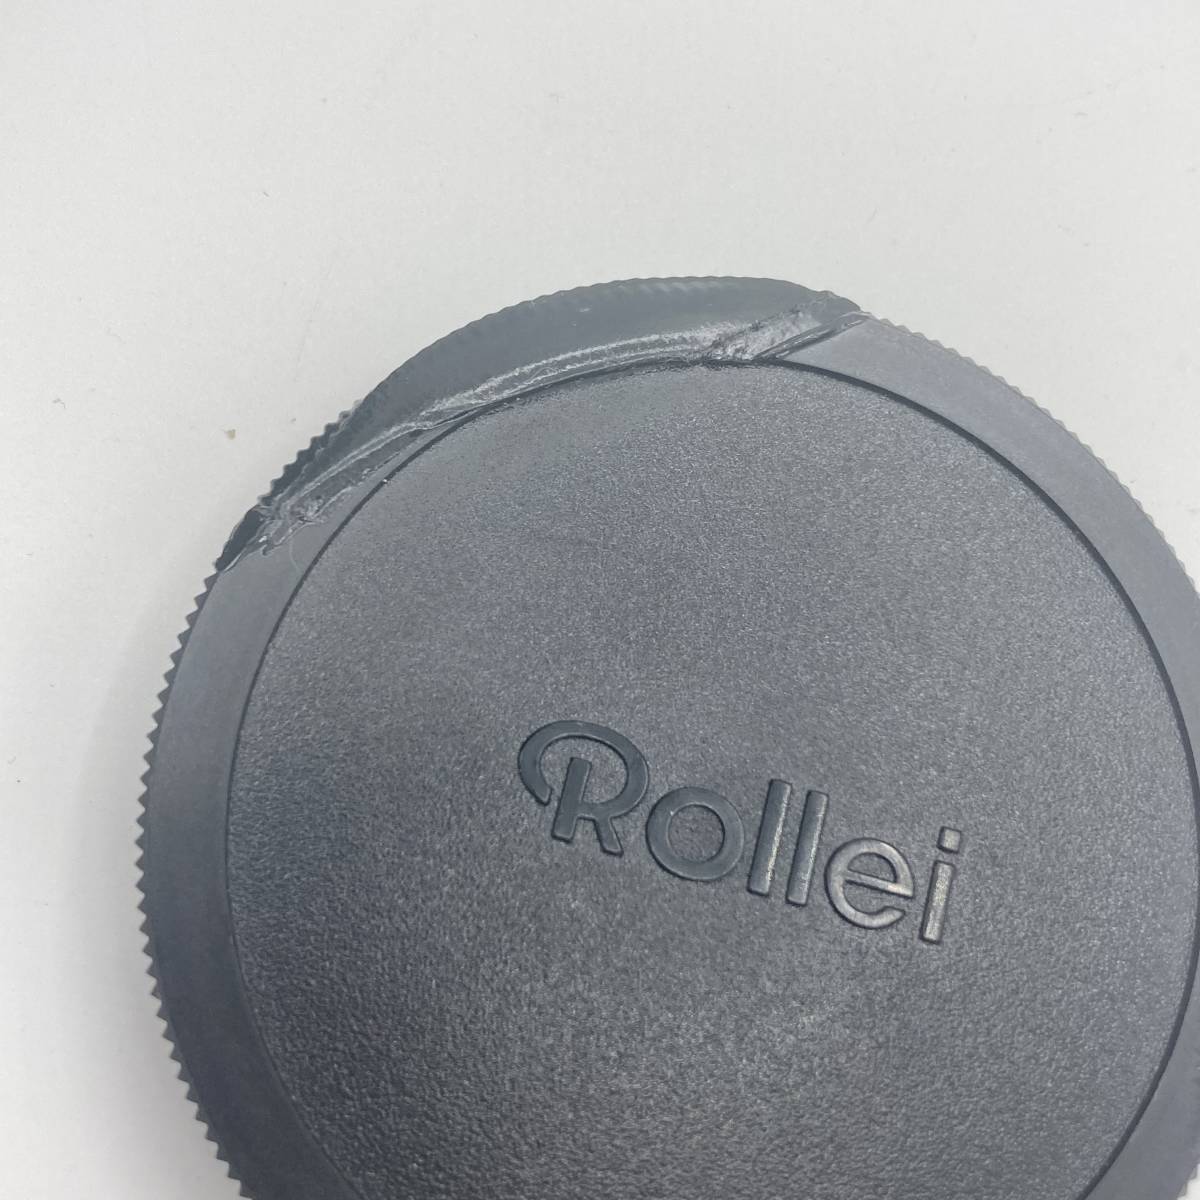 [ распродажа товар ][ корпус ]Rollei Rolleiflex Rollei Flex SLX корпус пленочный фотоаппарат средний размер камера однообъективный зеркальный камера 